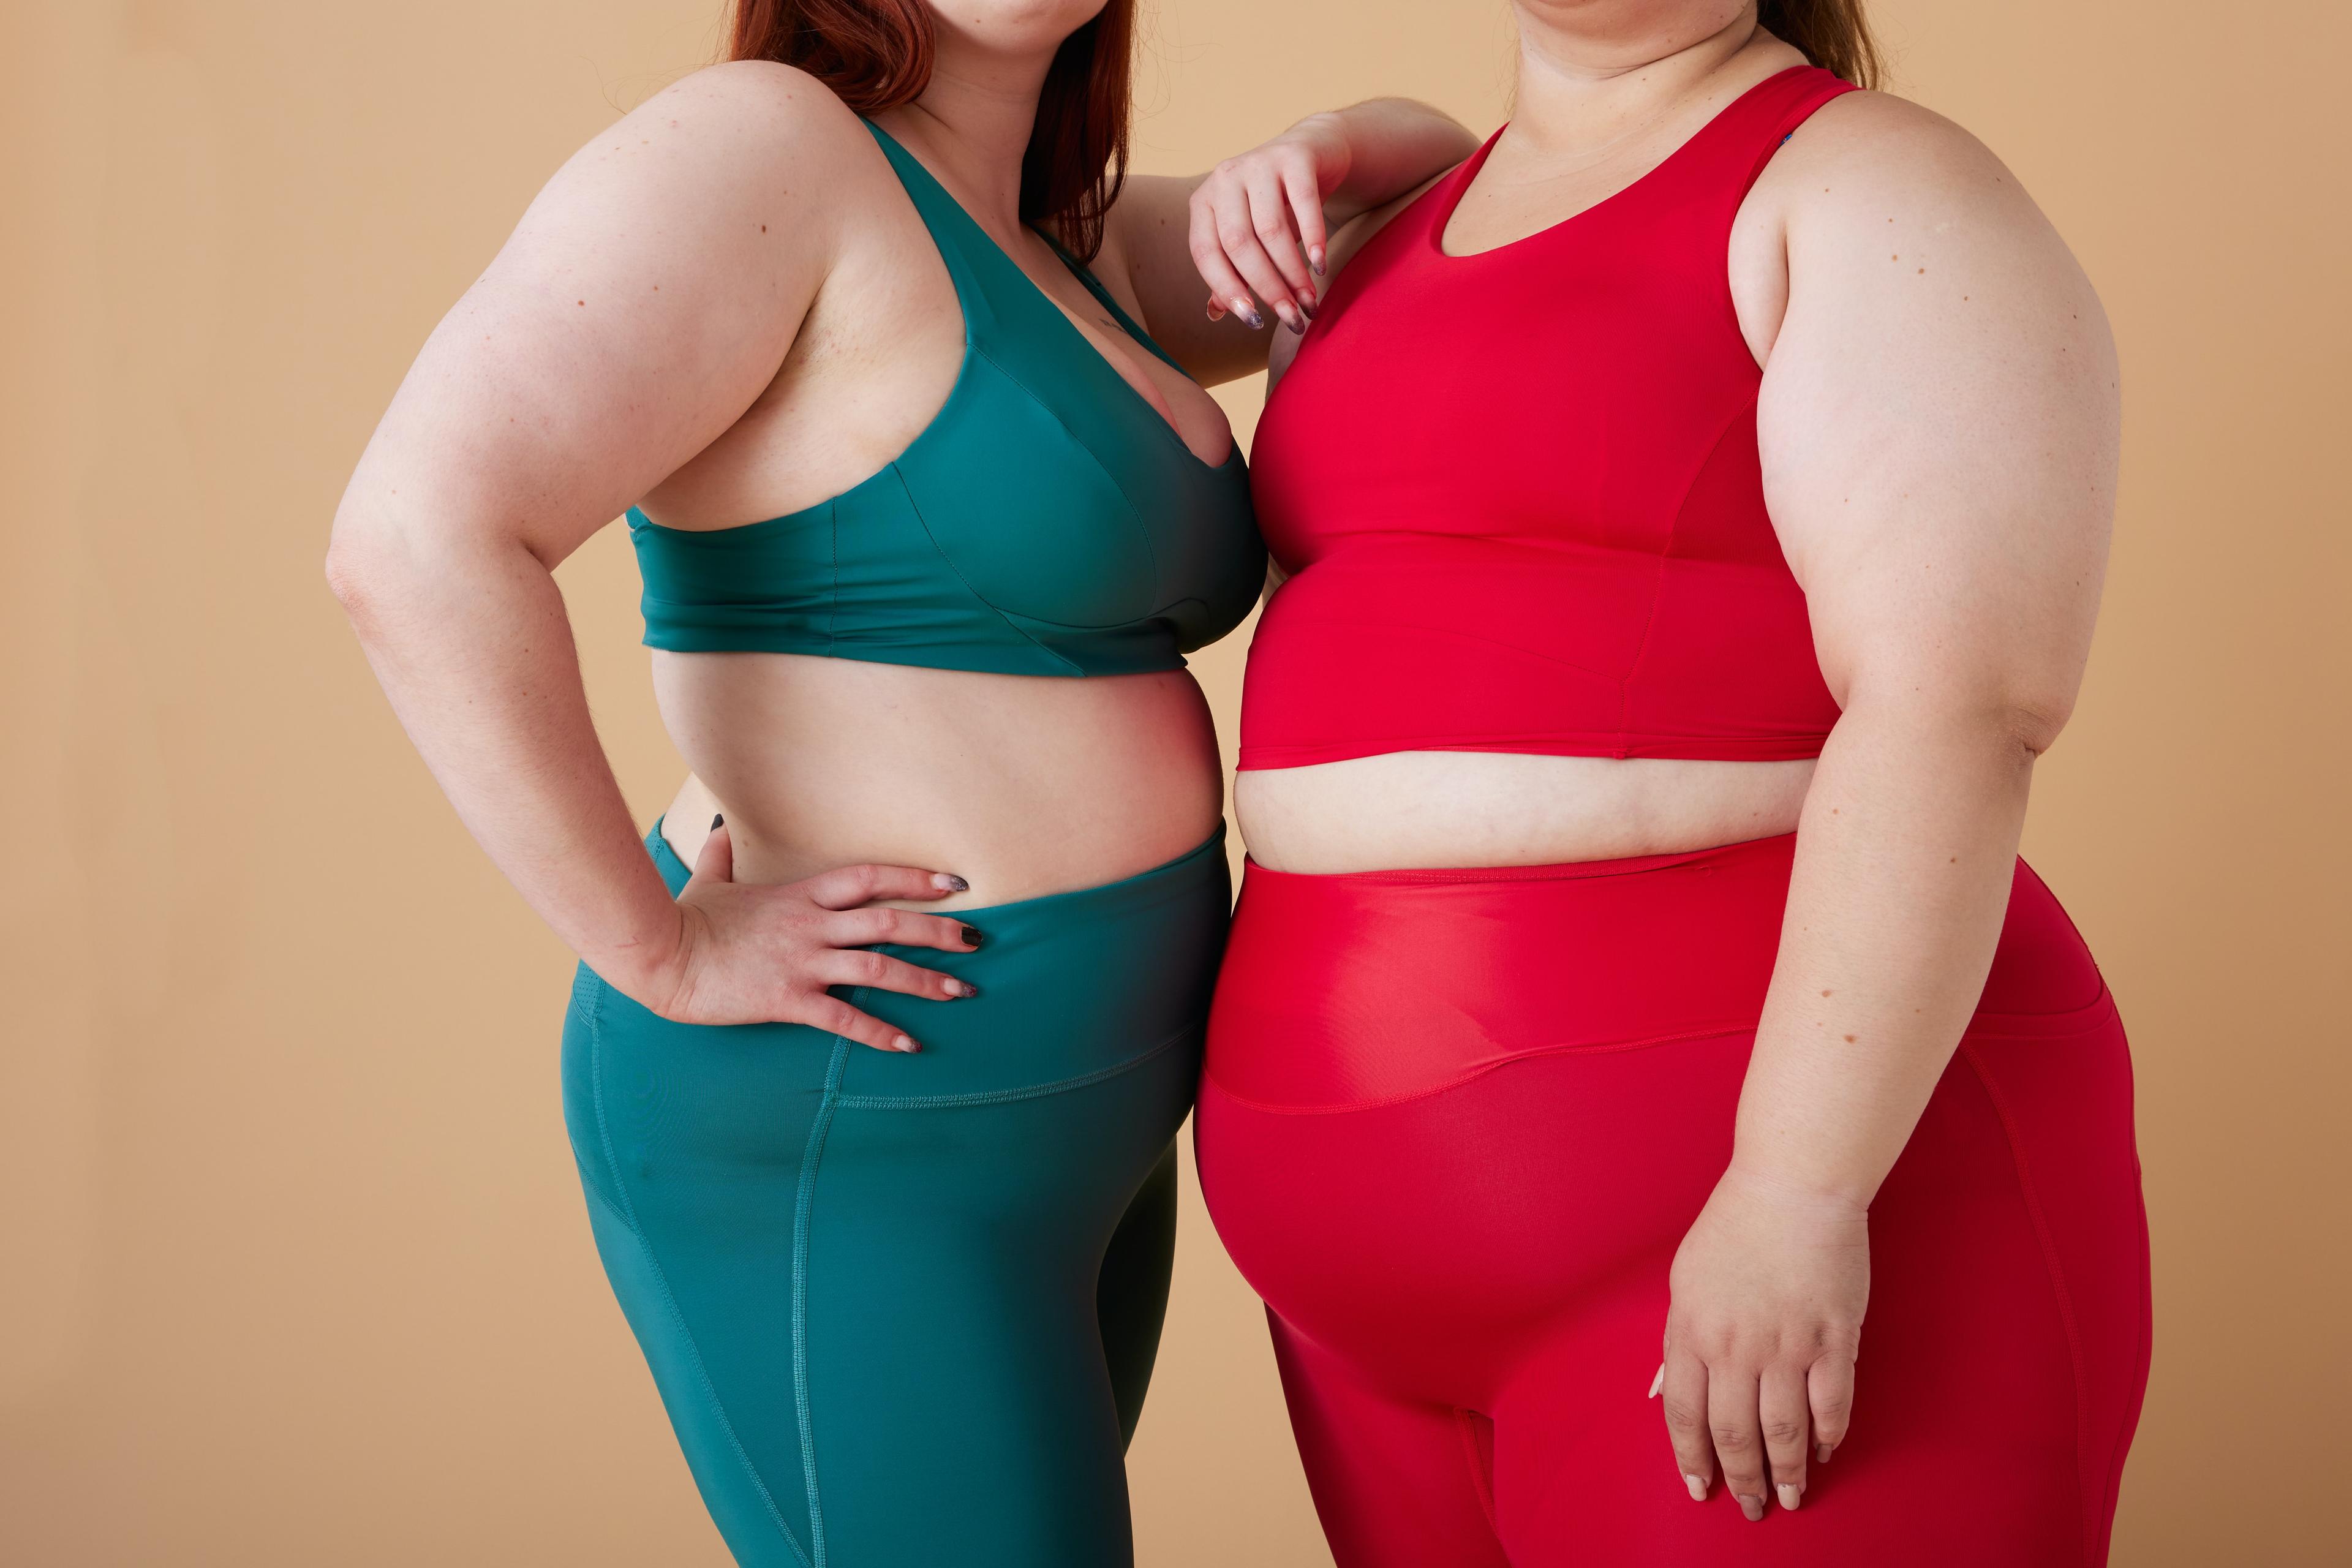 Fatfobia - czym jest i jak na nią reagować? O dyskryminacji otyłych ludzi i fatfobii